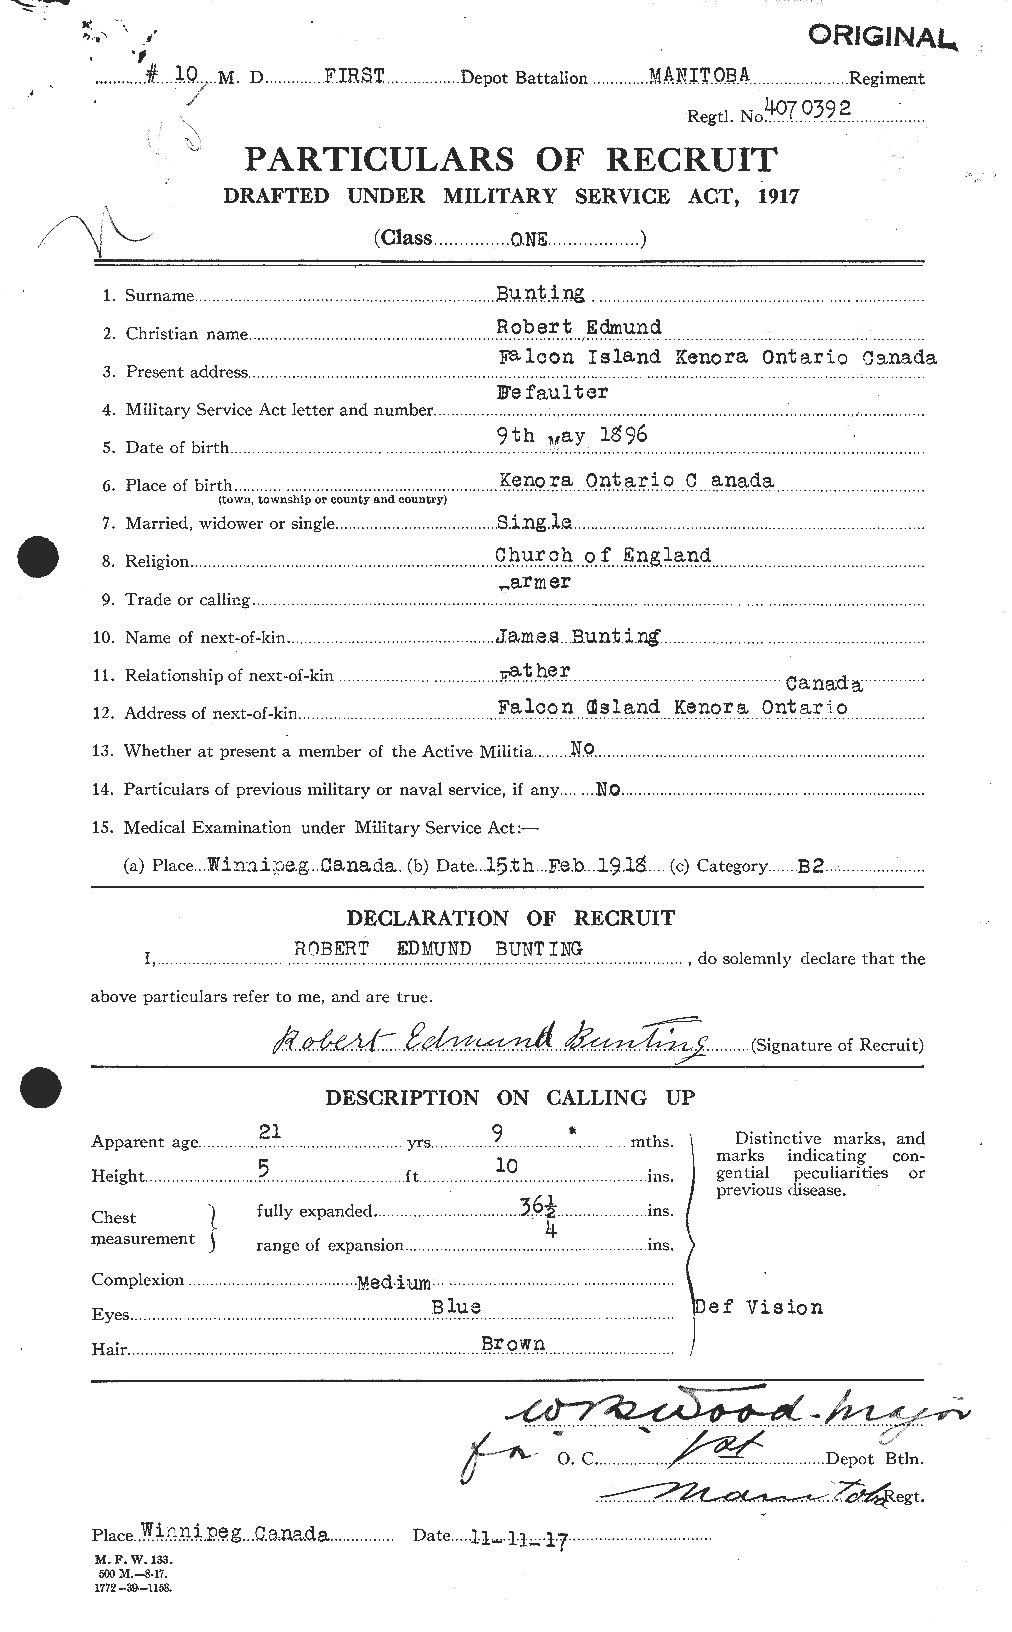 Dossiers du Personnel de la Première Guerre mondiale - CEC 270961a